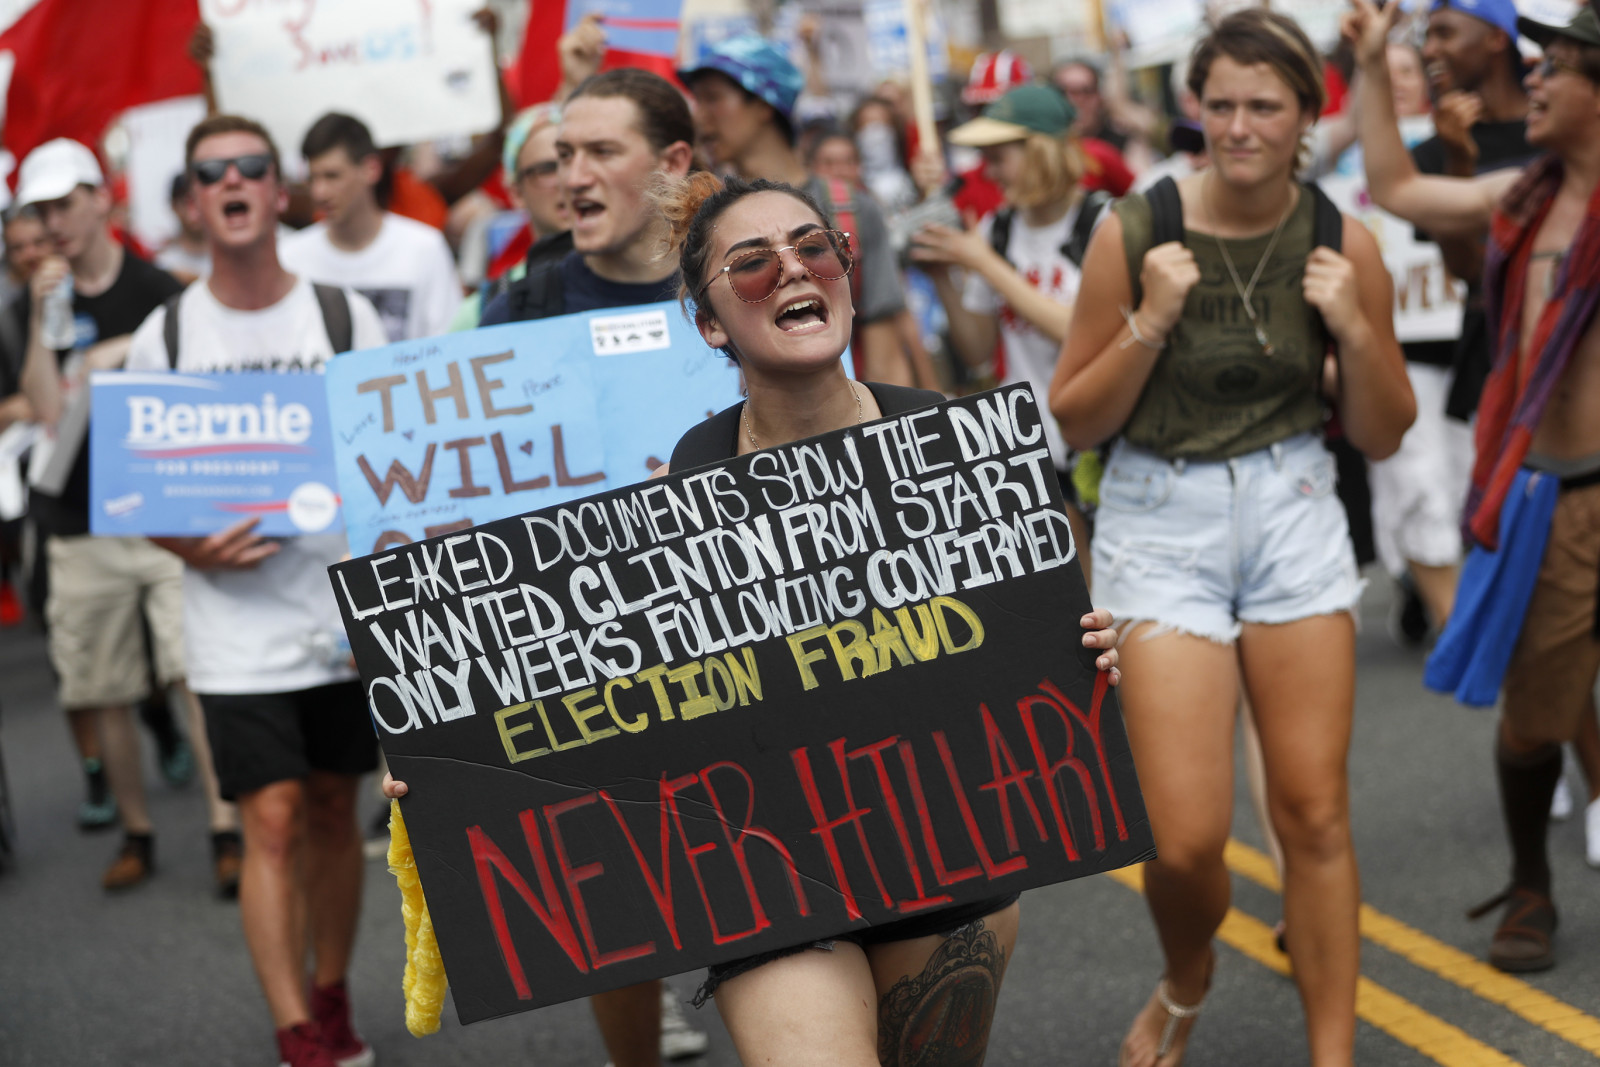 הפגנה של תומכי סנדרס מול הוועידה הדמוקרטית. צילום: AP